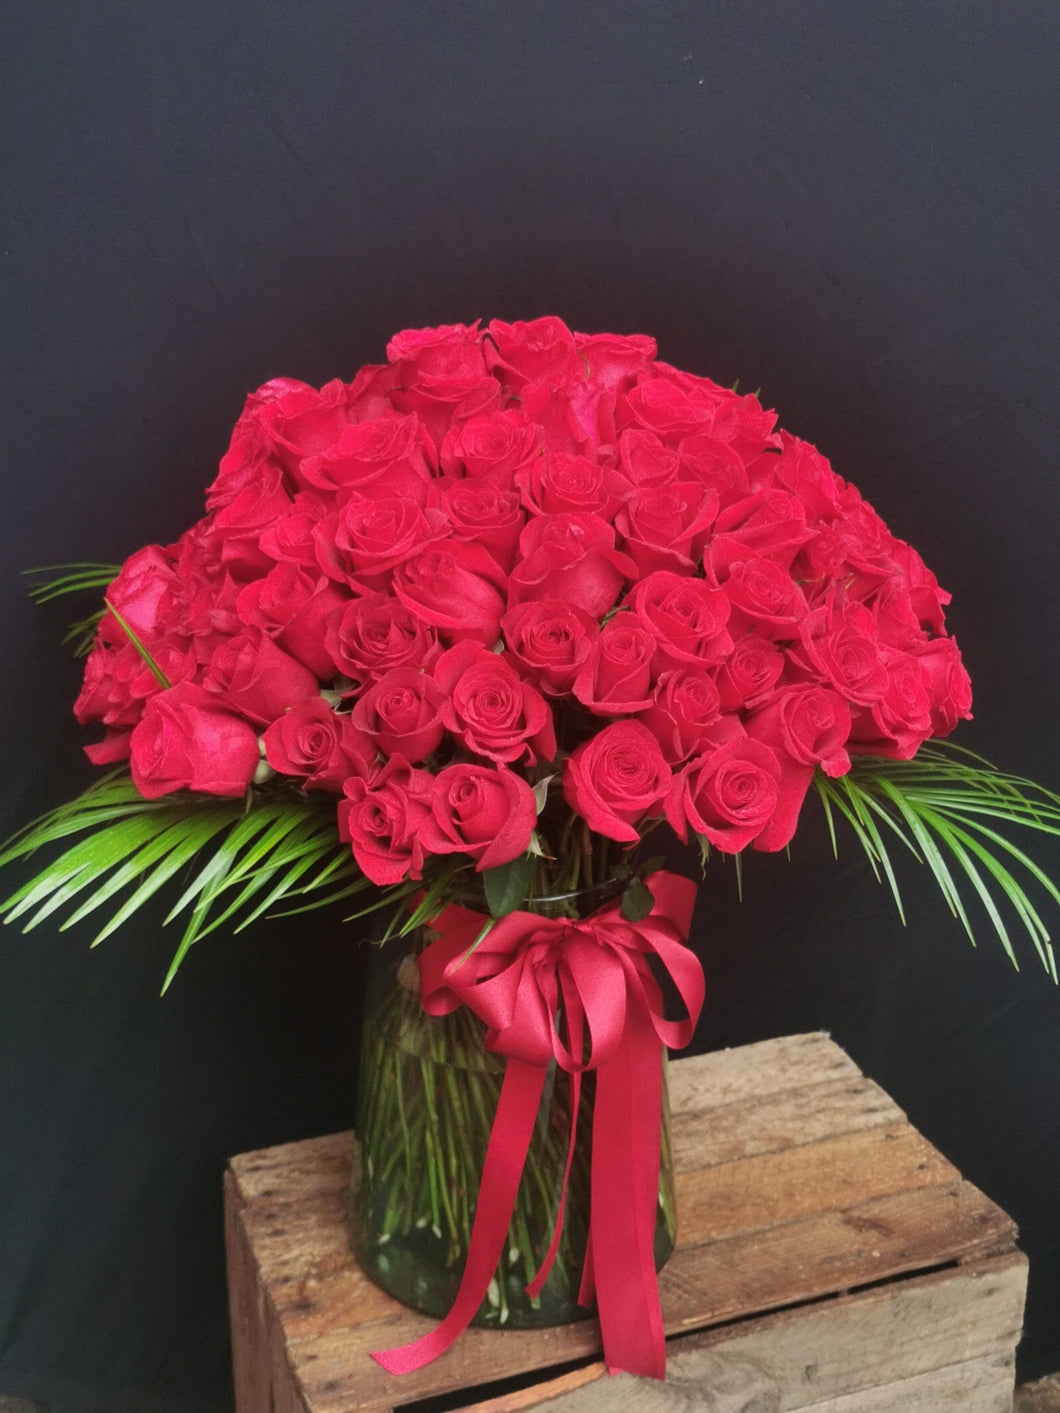 100 Red Rose Vase